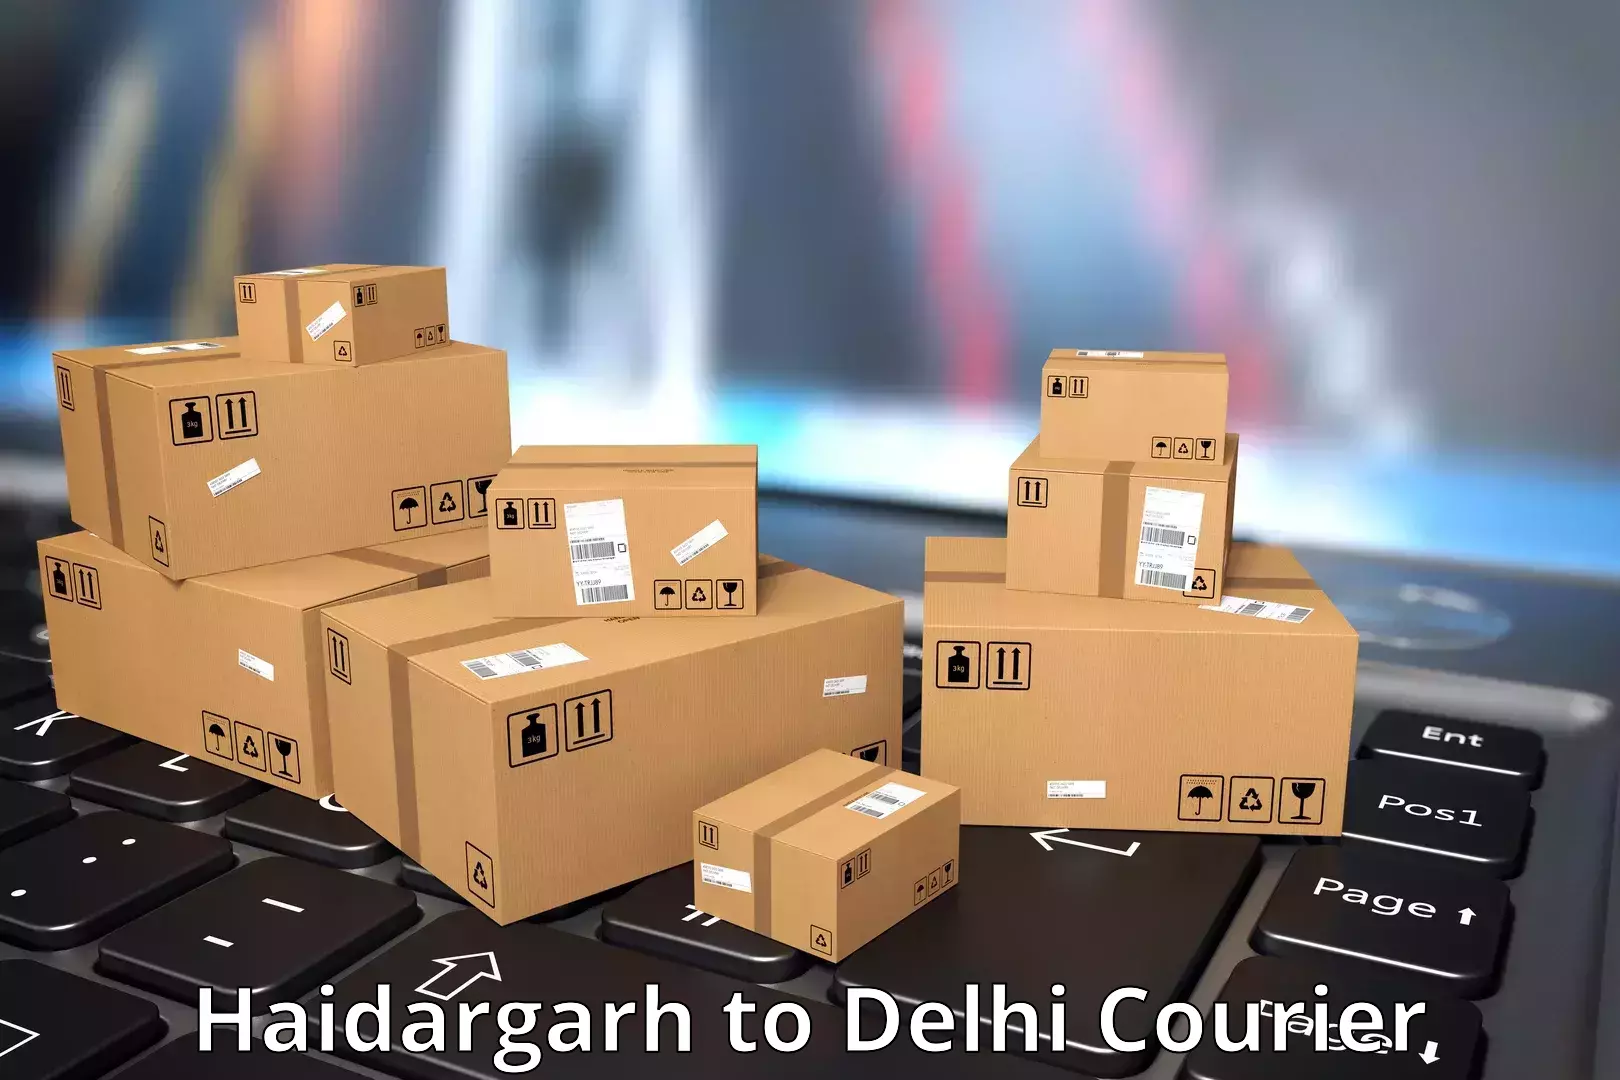 24/7 courier service Haidargarh to Delhi